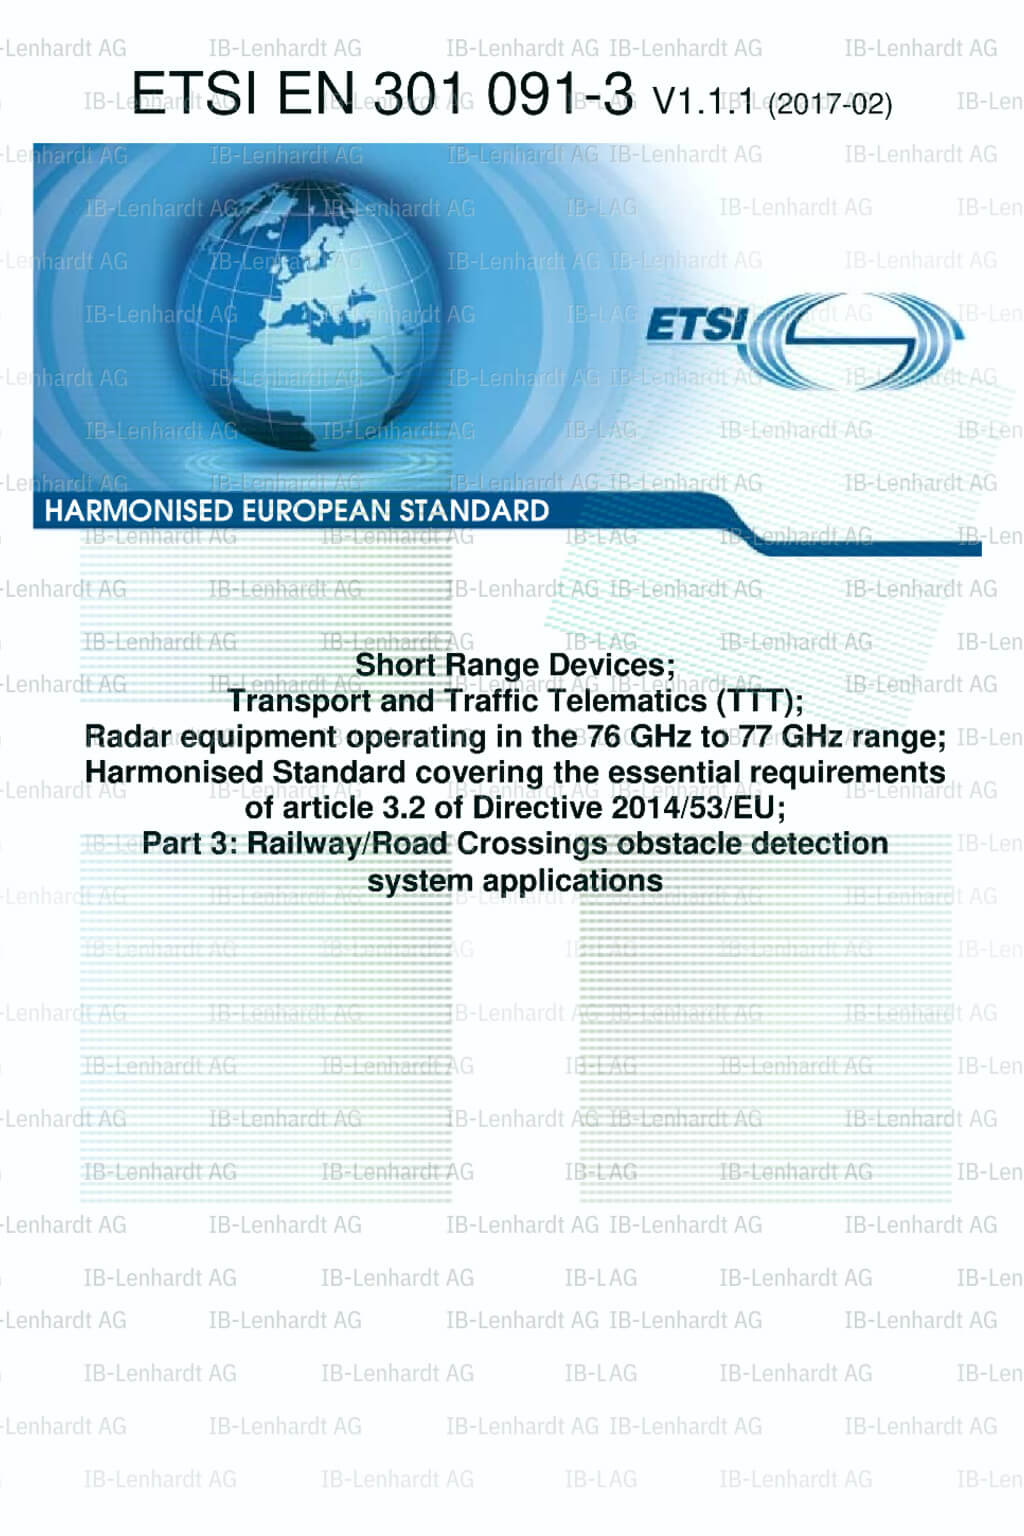 ETSI EN 301 091-3 V1.1.1